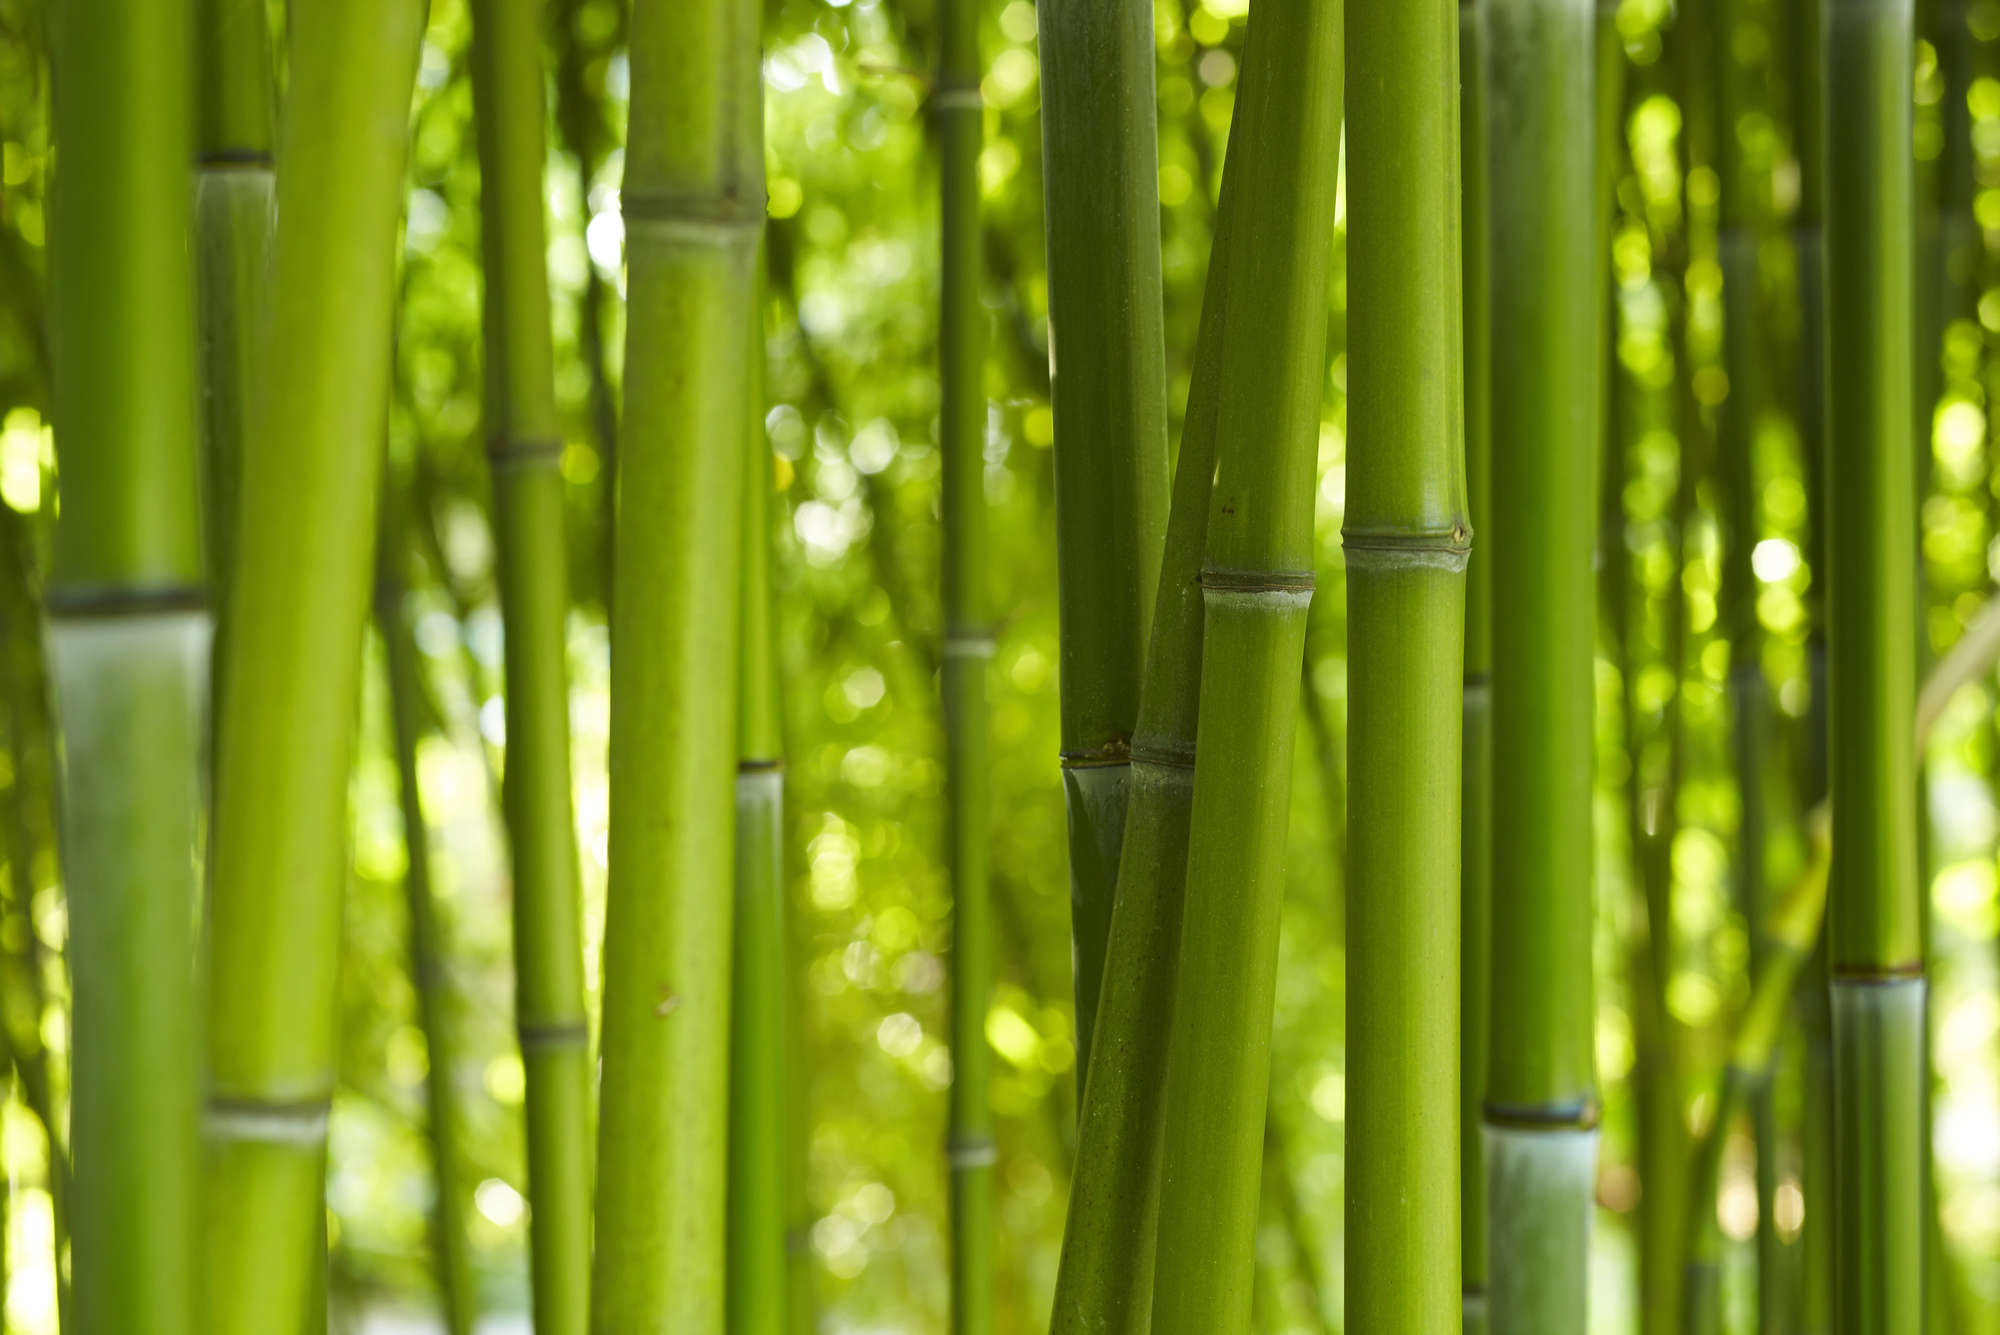             Fototapete Bambus in Grün – Perlmutt Glattvlies
        